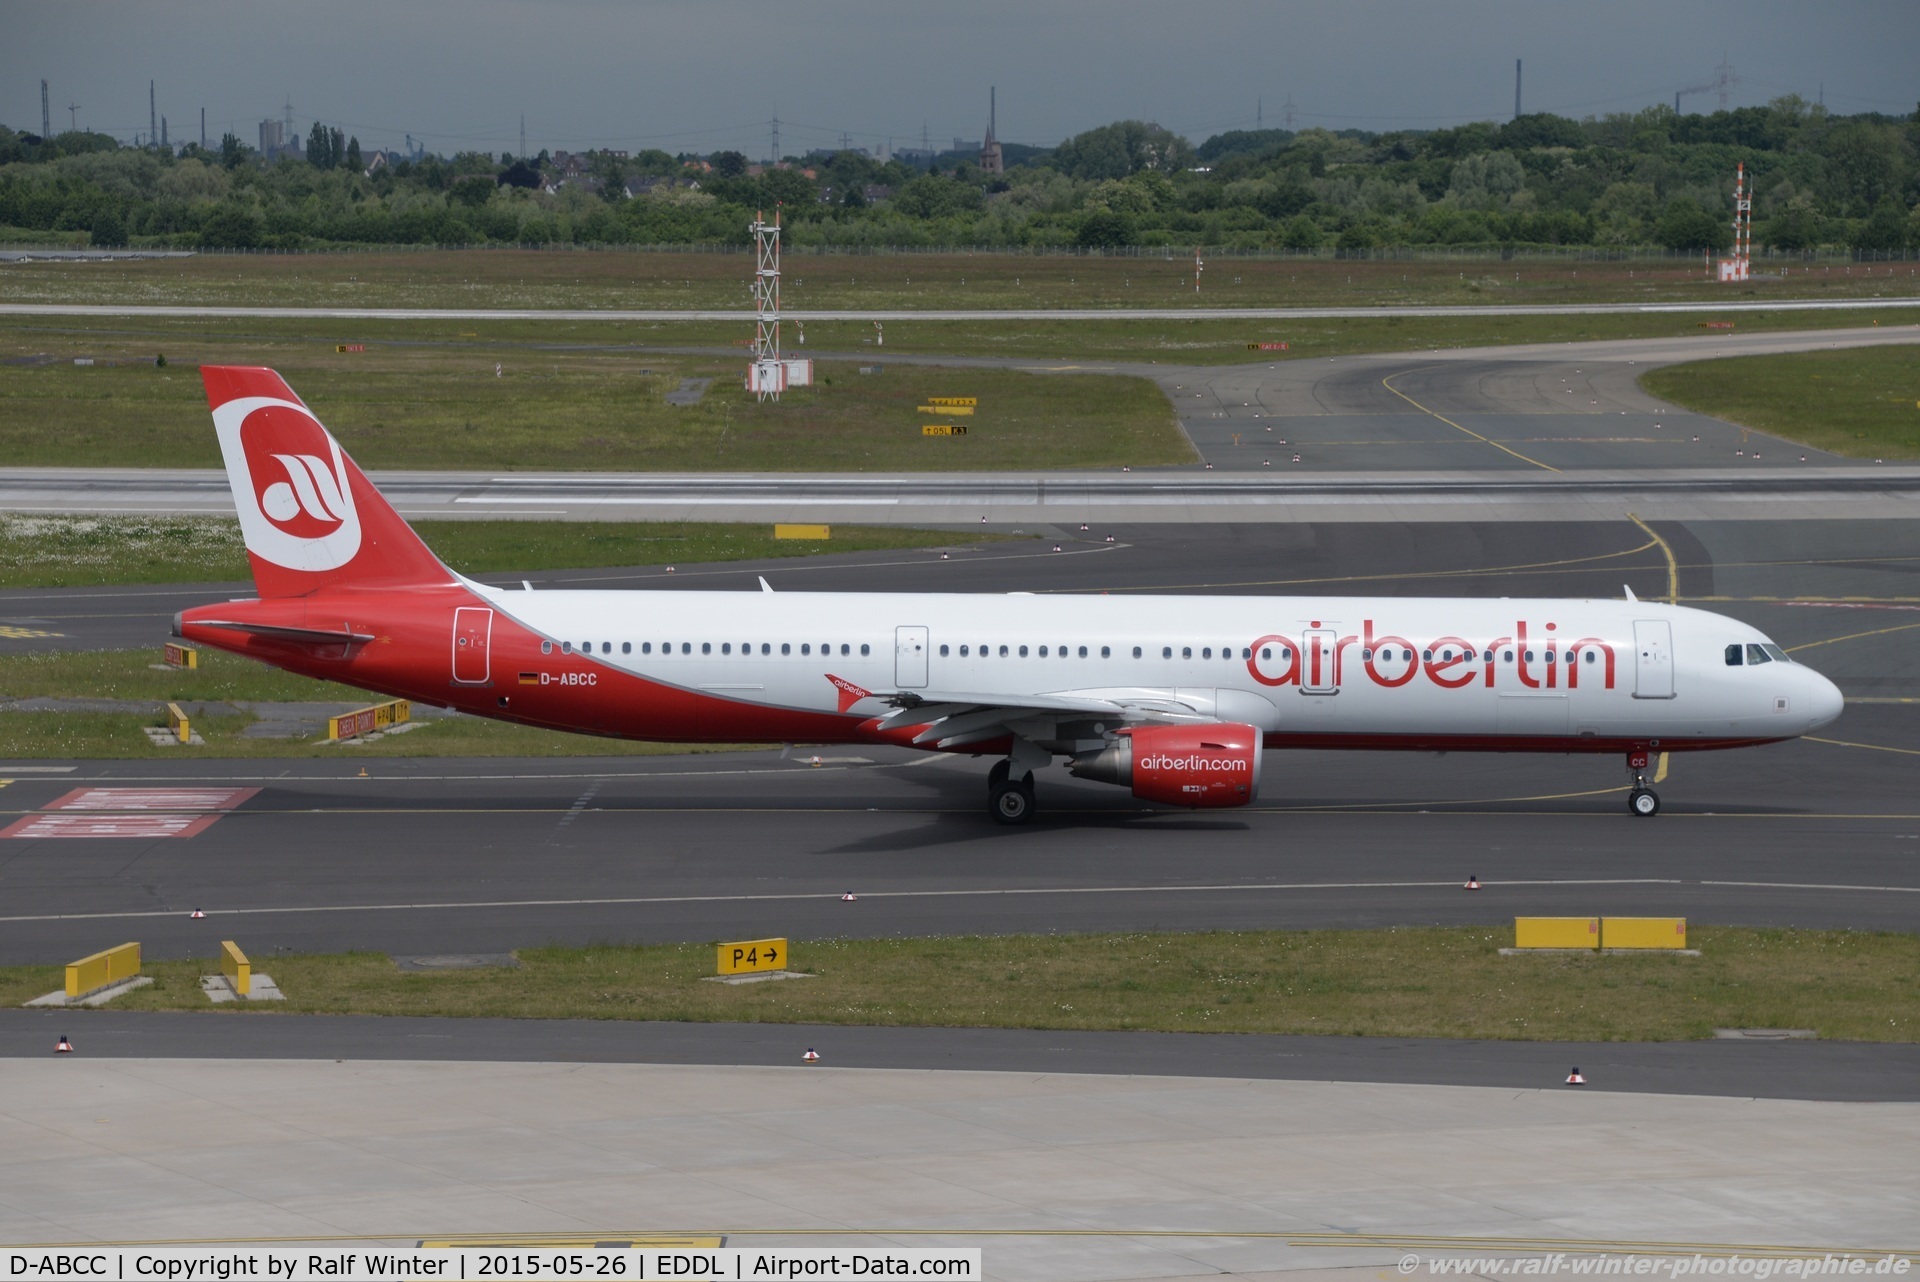 D-ABCC, 2010 Airbus A321-211 C/N 4334, Airbus A321-211 - AB BER Air Berlin - 4334 - D-ABCC - 26.05.2015 - DUS